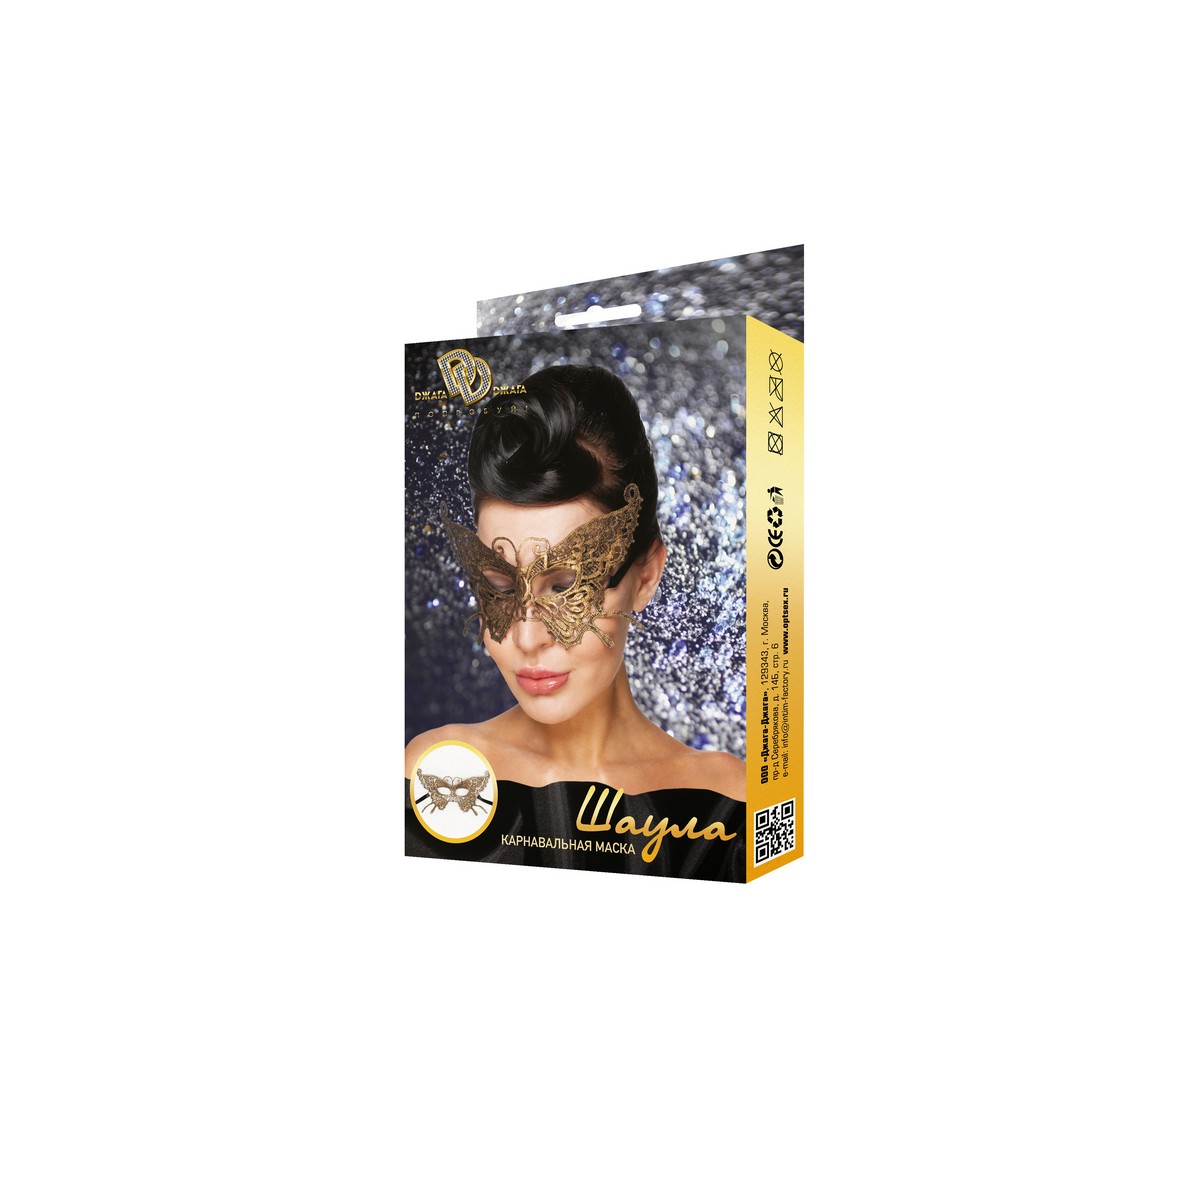 Карнавальная маска Шаула (золото) - фото 1